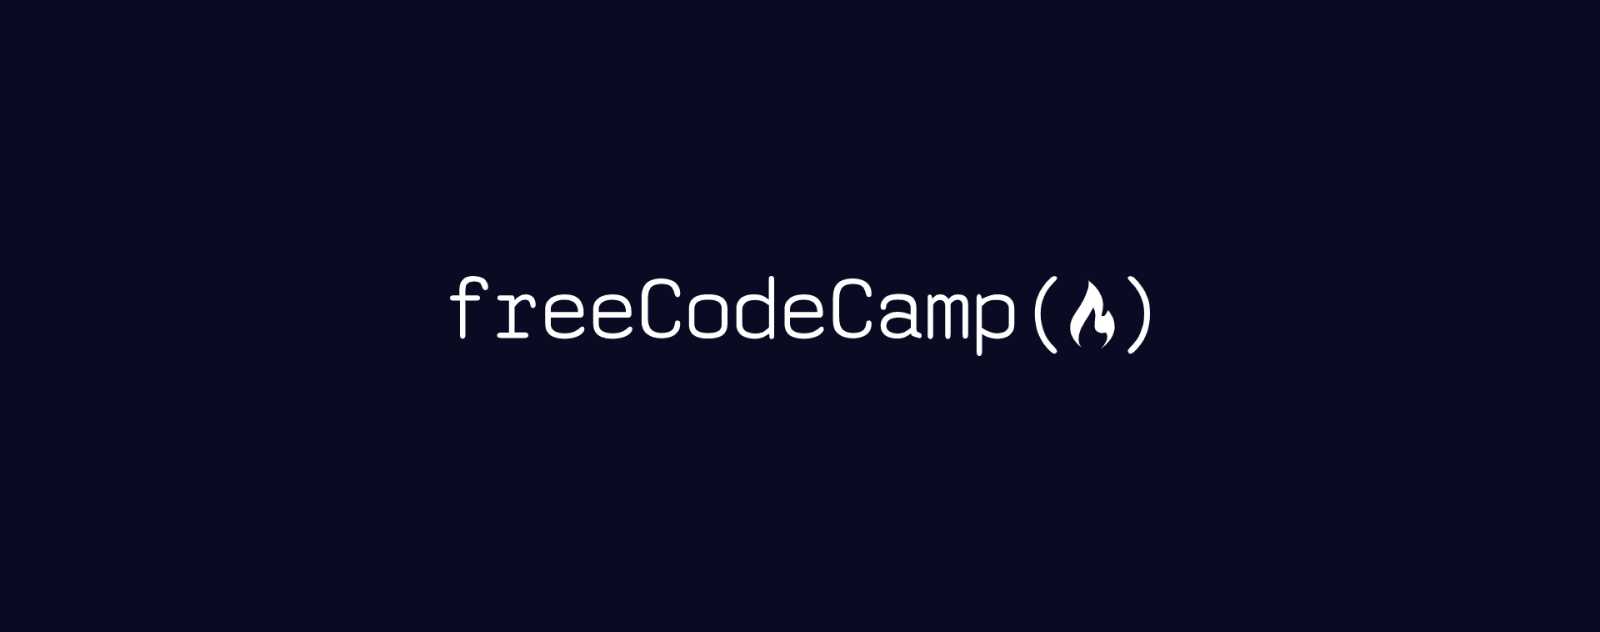 Apprendre a coder gratuitement sur freeCodeCamp